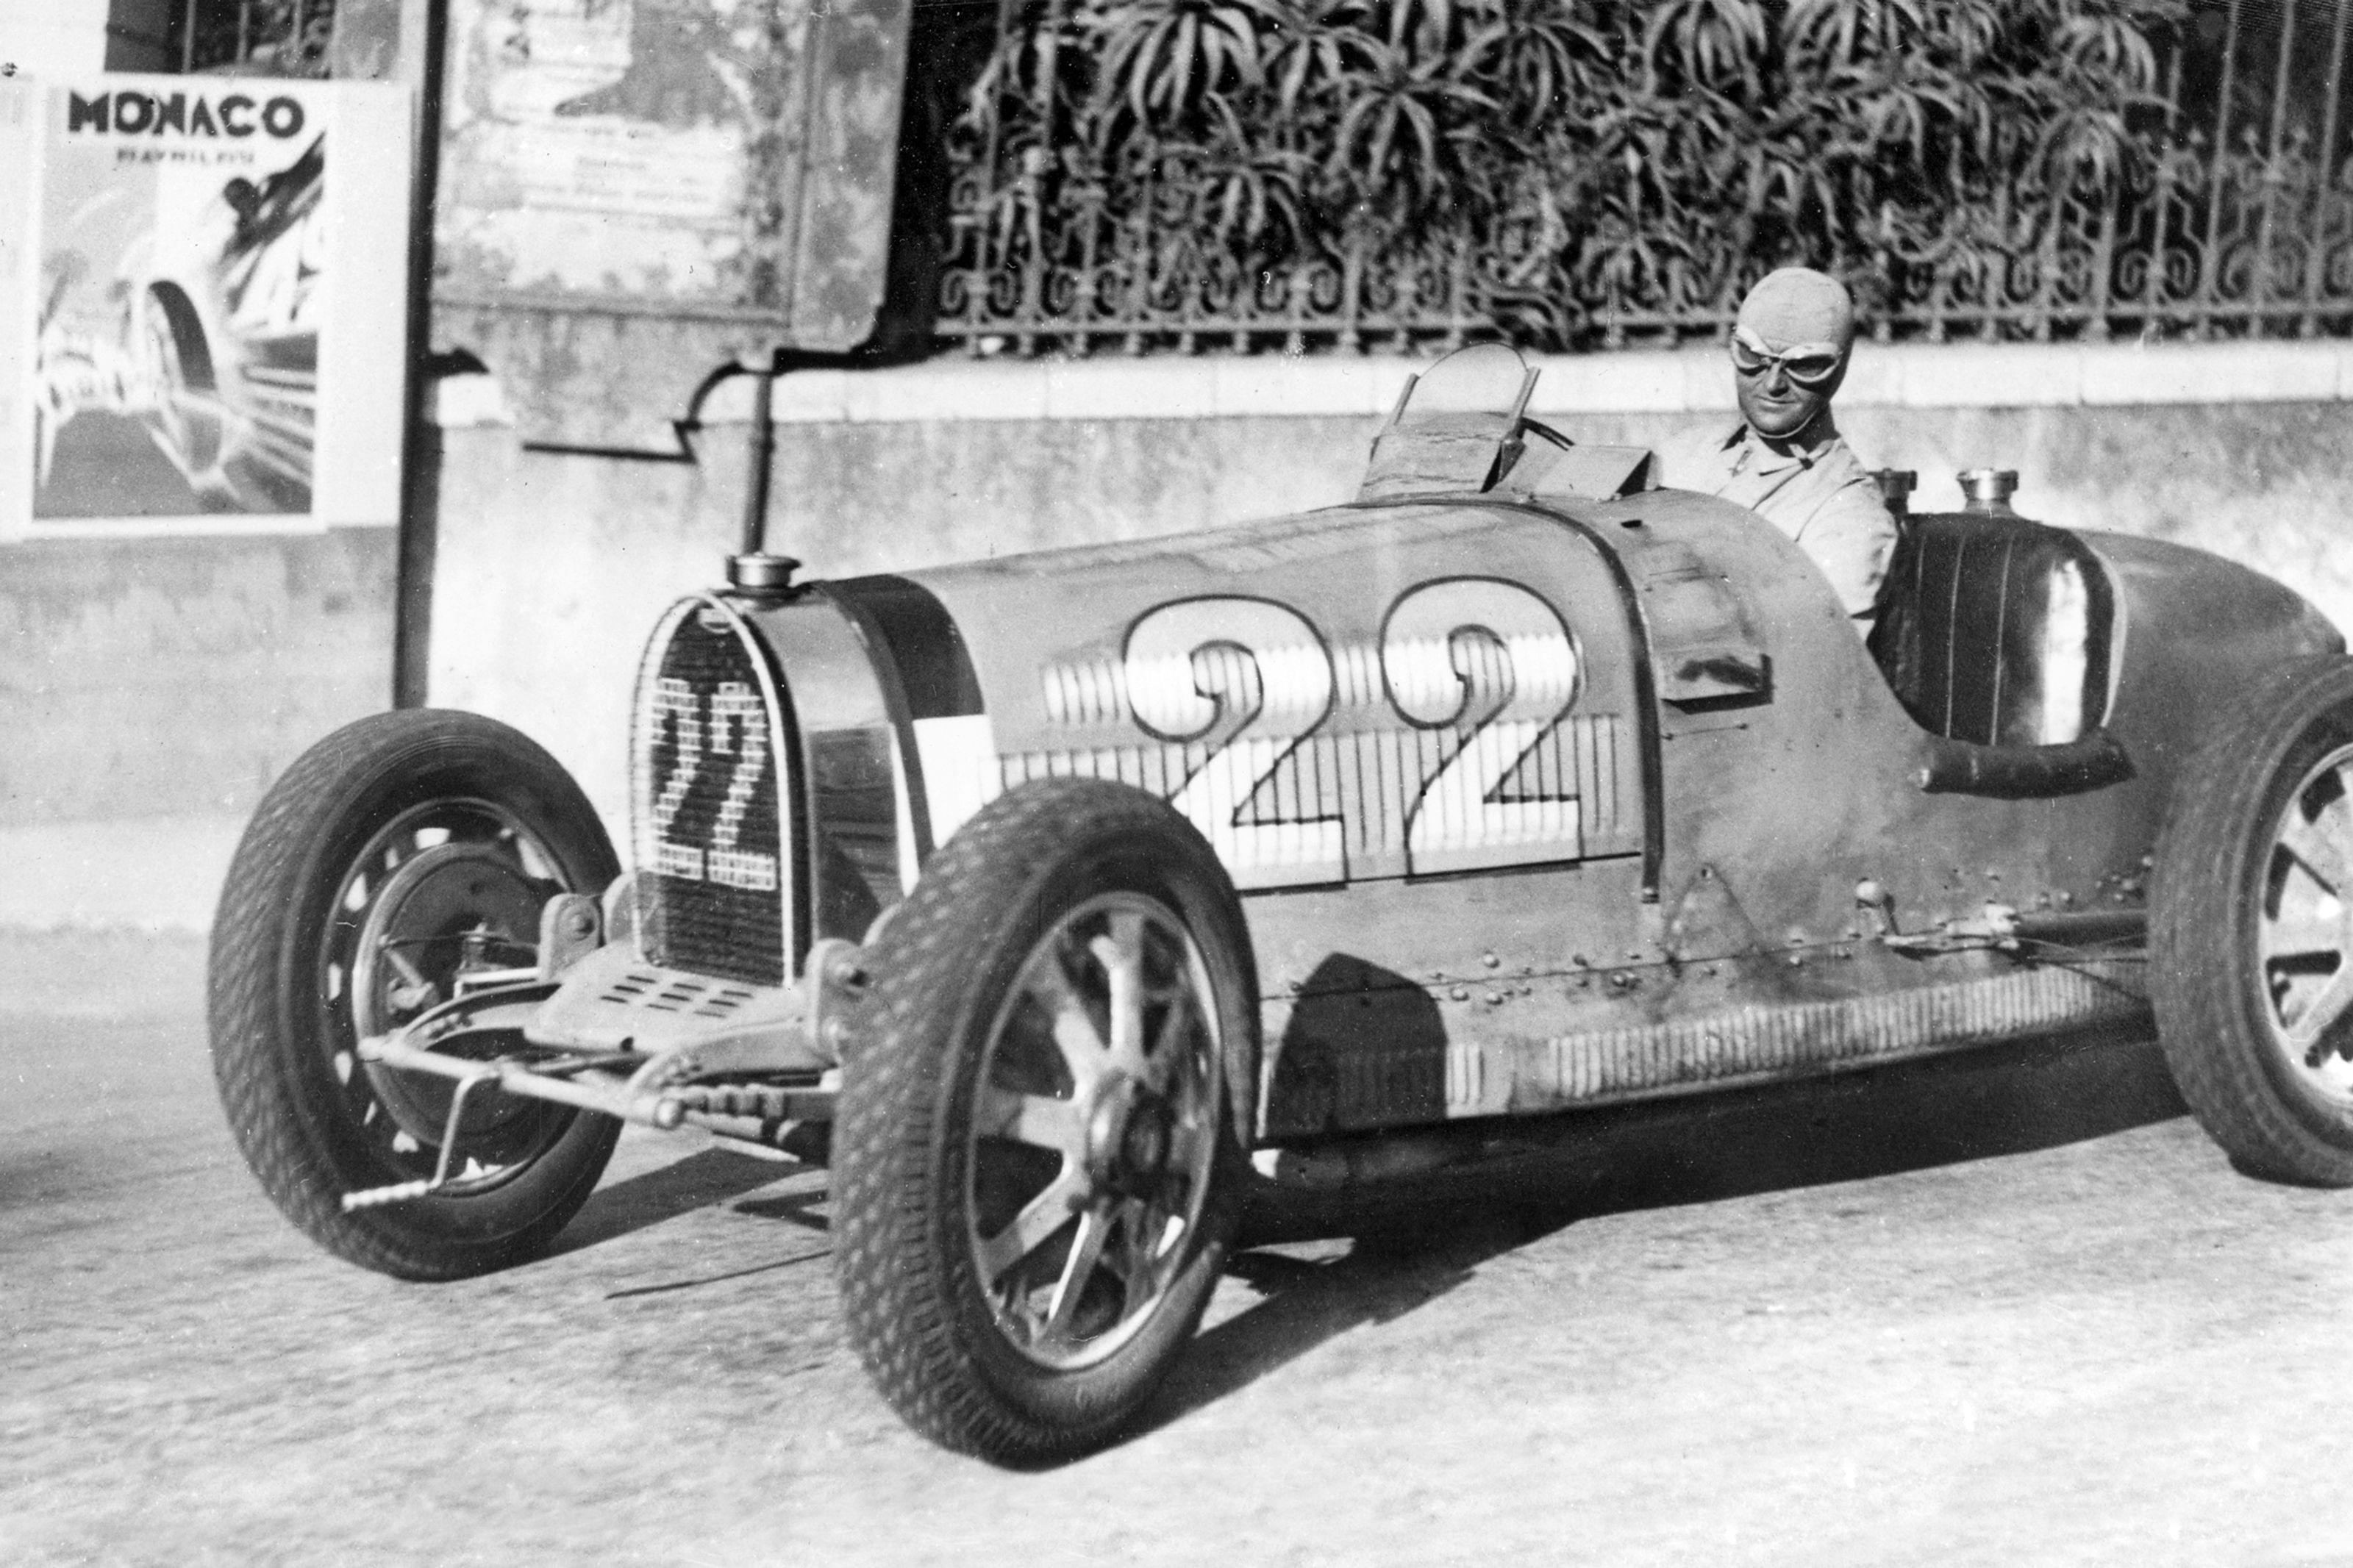 Bugatti, le Grand Prix de Monaco et Louis Chiron écrivent ensemble l’histoire du sport automobile